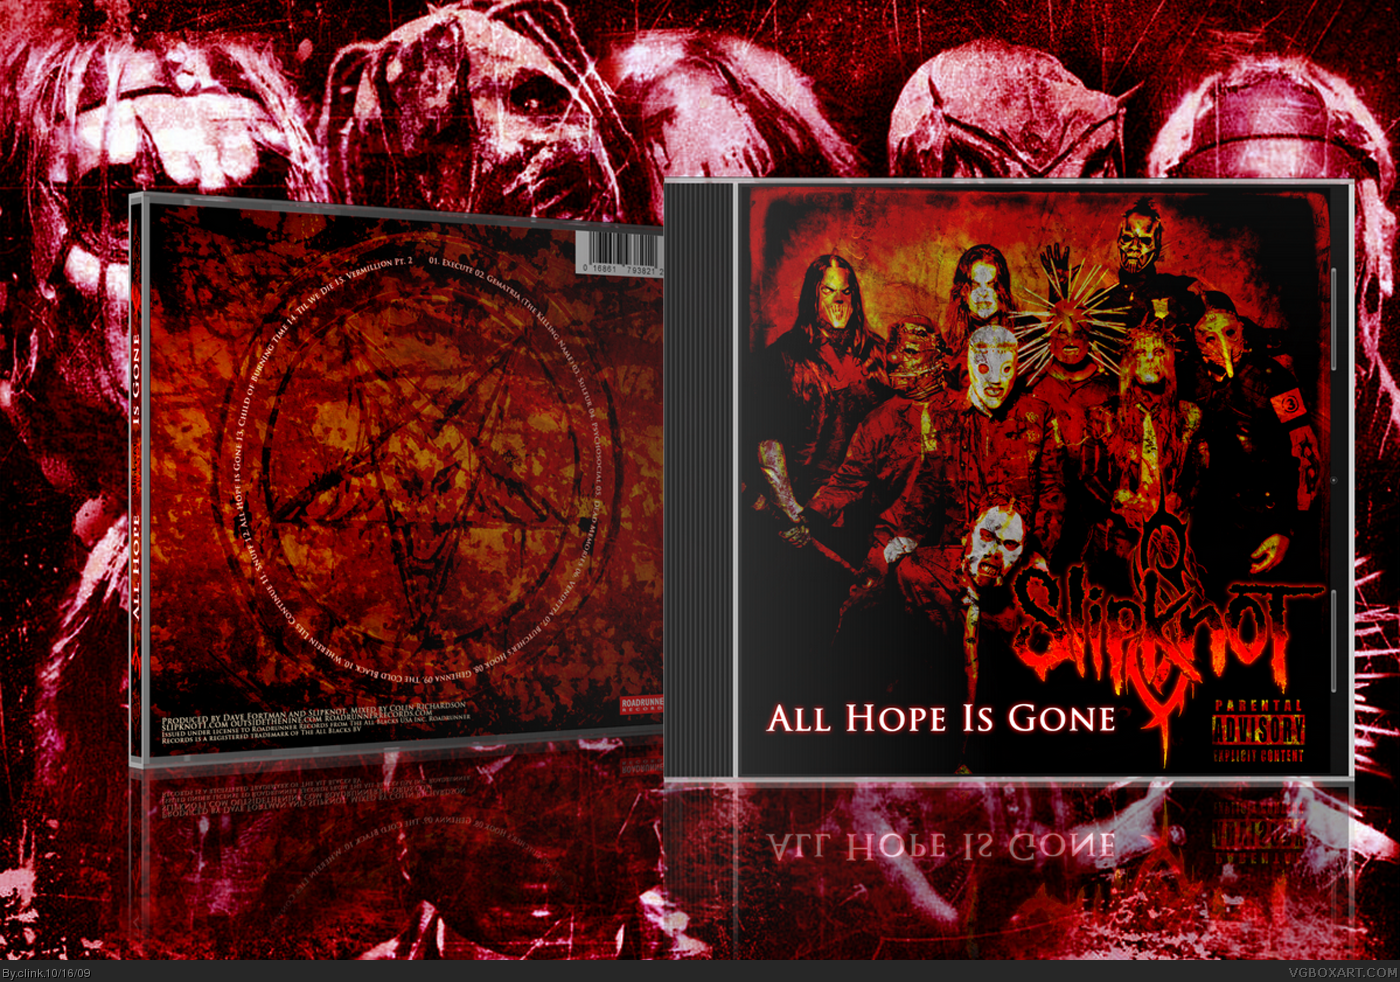 Slipknot - All Hope is Gone box cover